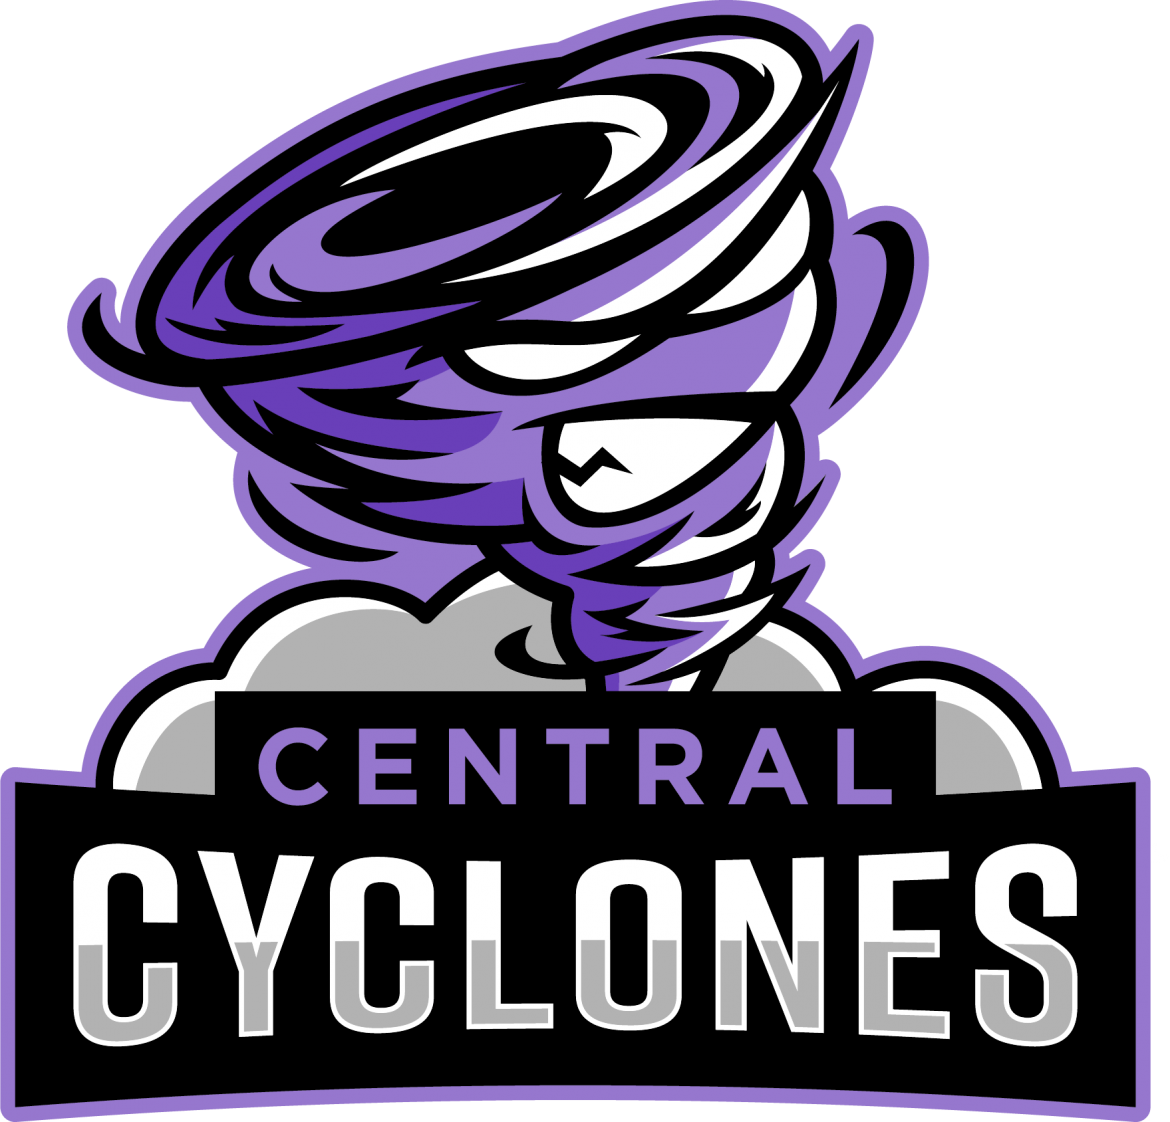 Central Cyclones logo